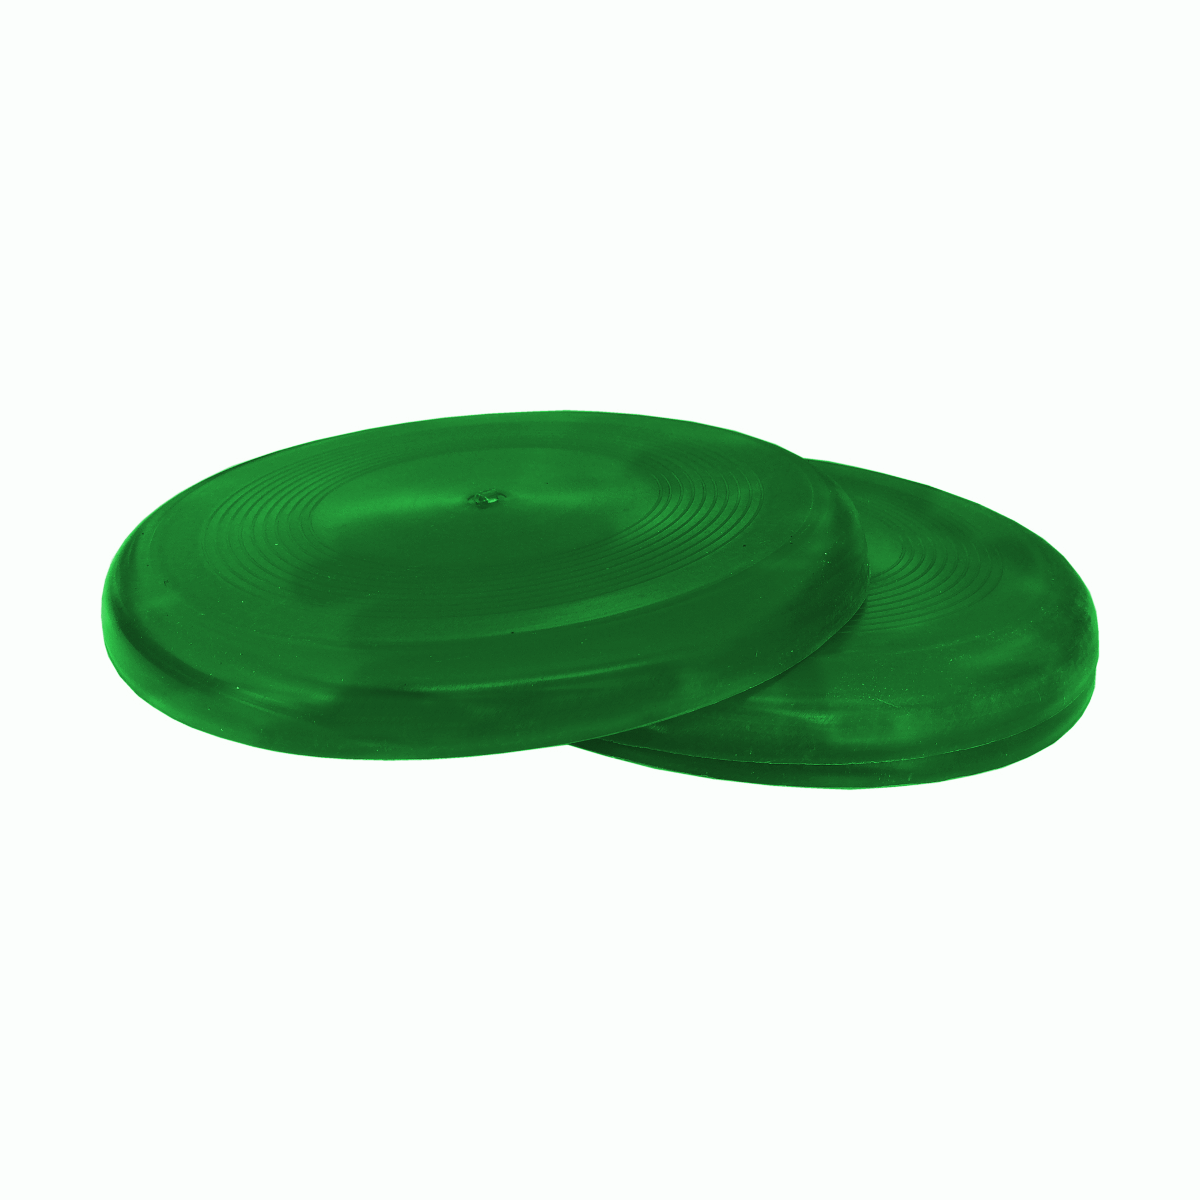 Köpek Eğitim Frizbi Oyuncak 22 cm  Yeşil